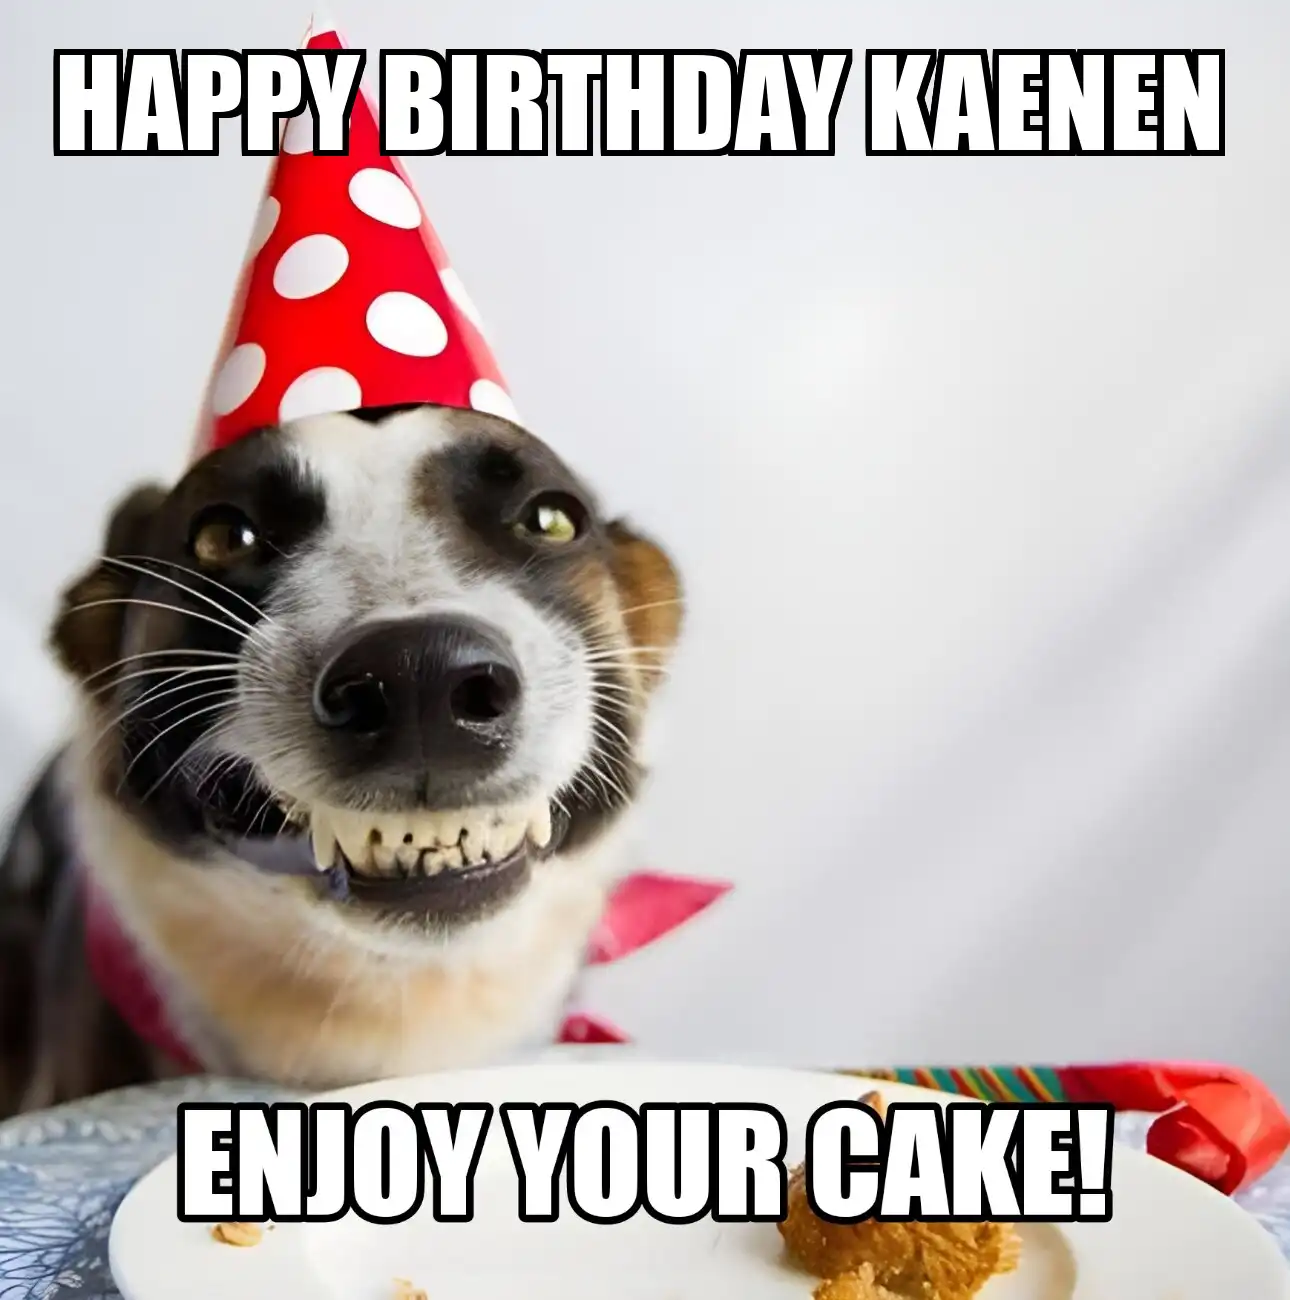 Happy Birthday Kaenen Enjoy Your Cake Dog Meme